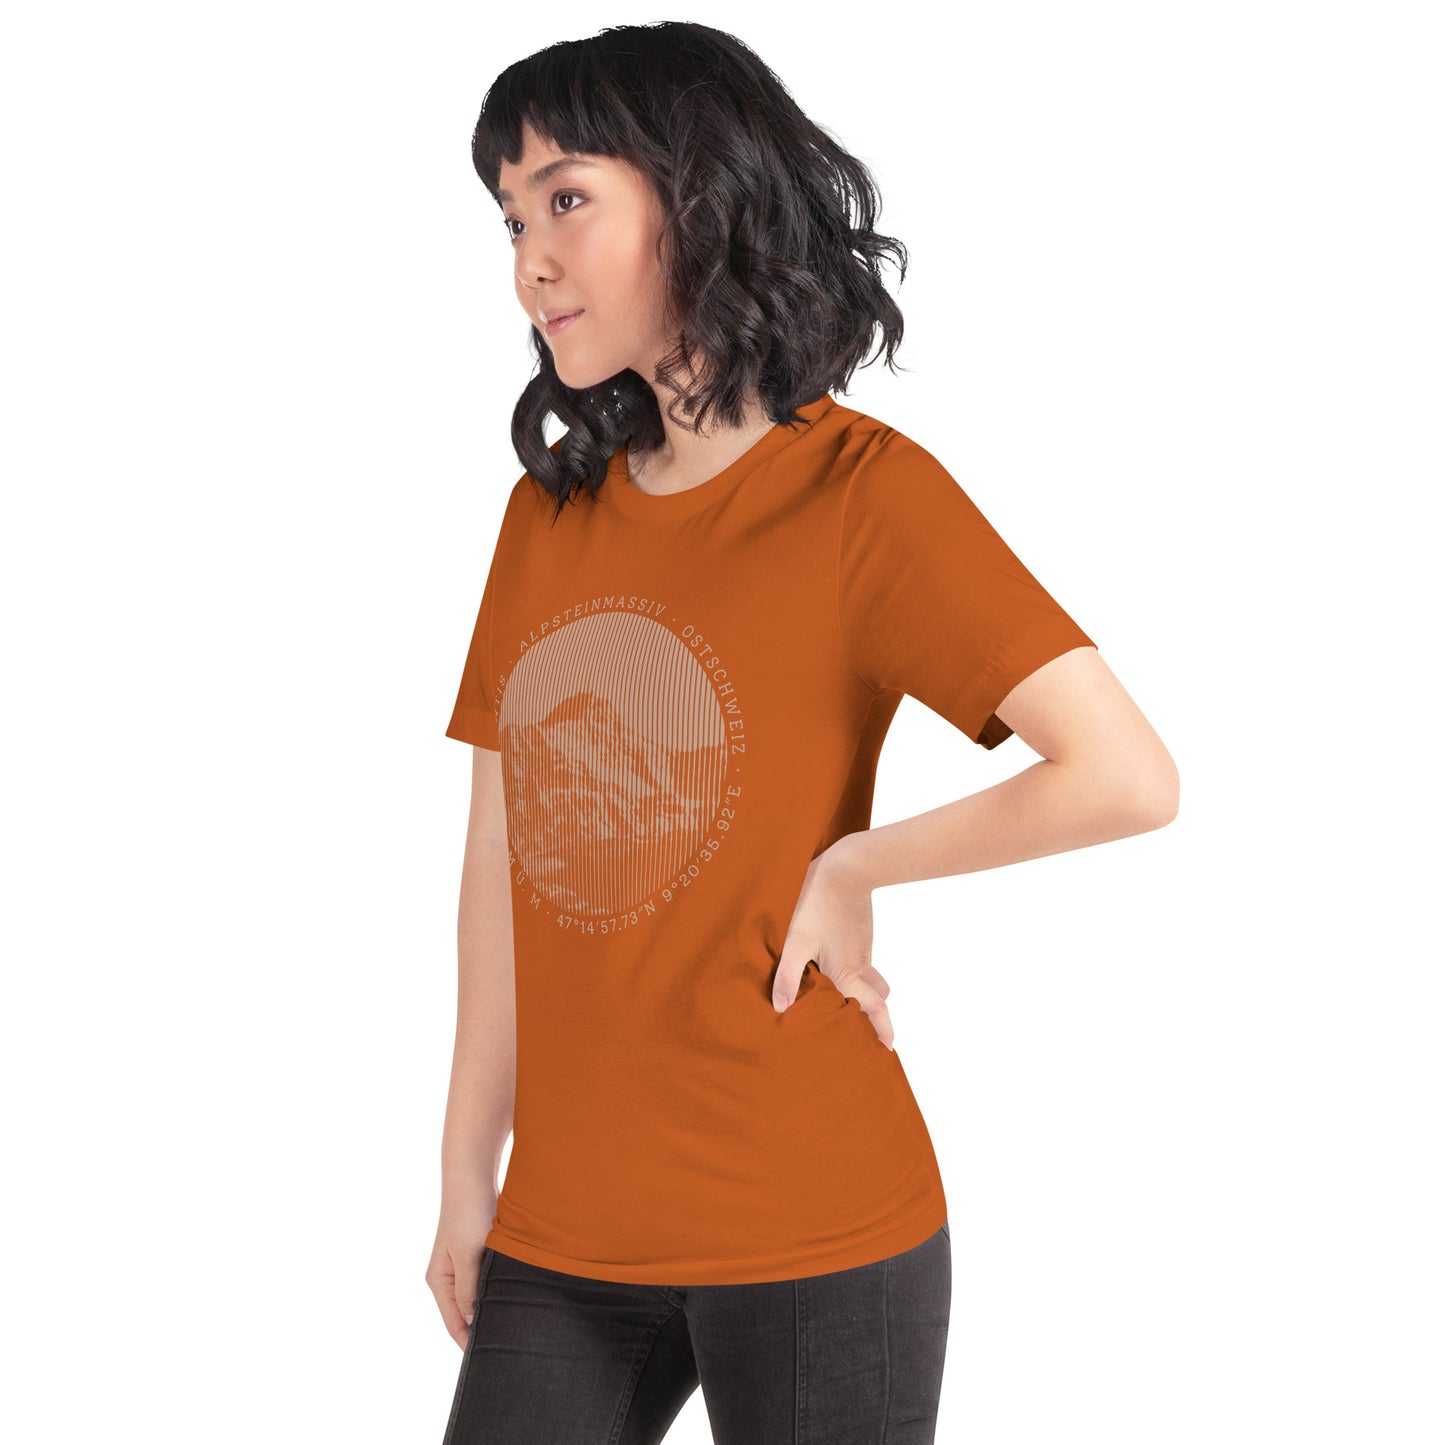 Diese Naturfreundin trägt ein oranges Damen T-Shirt von Vallada mit einem Aufdruck des Säntis-Gipfels. Dieses T-Shirt ist ein Ausdruck ihres Enthusiasmus für die Region des Alpsteins.